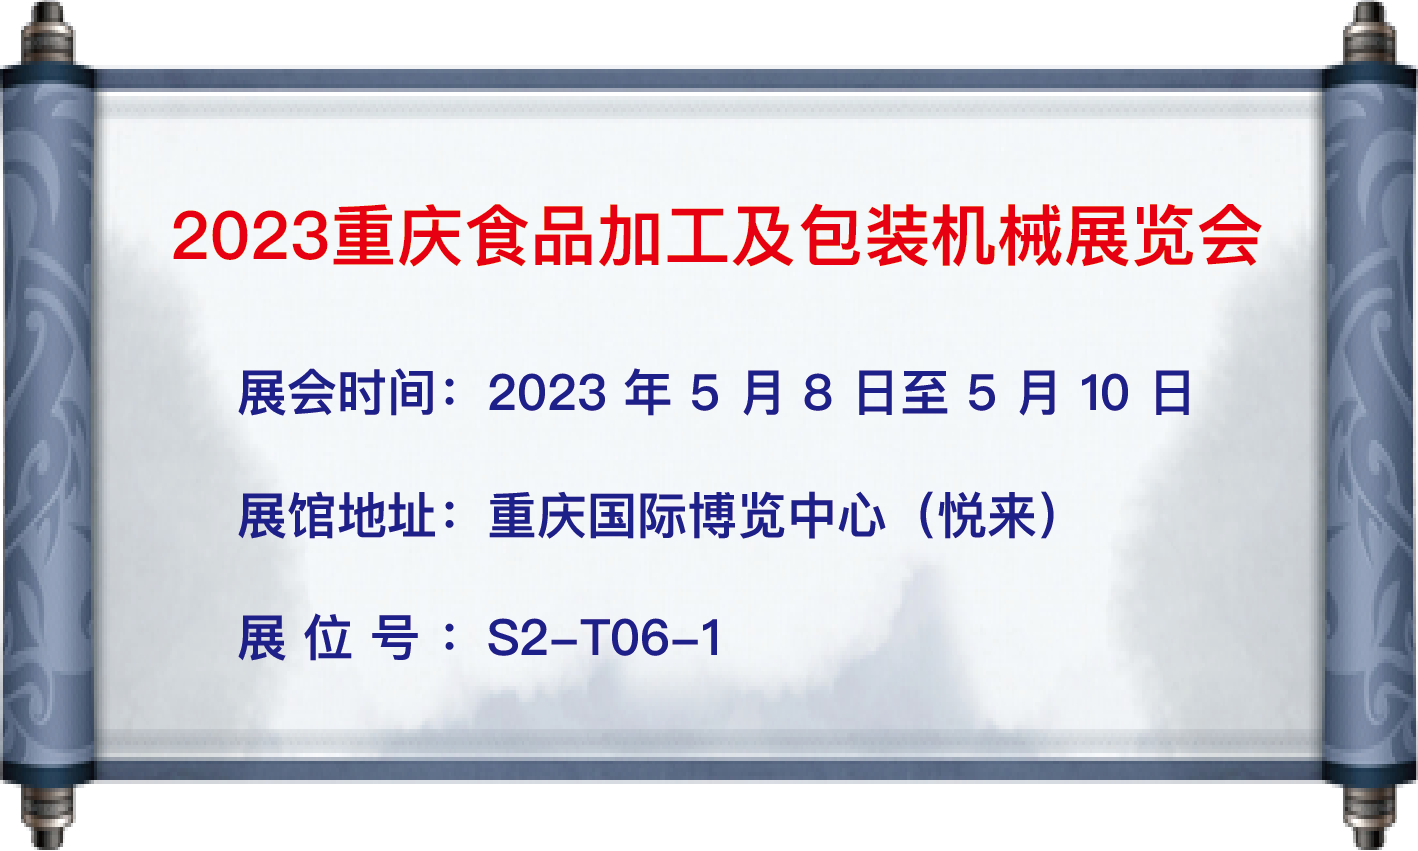 我司于5月8日至10日參加【2023重慶食品加工及包裝機械展覽會】;地址：重慶國際博覽中心（悅來）;展位號：S2-T06-1;歡迎大家蒞臨參觀！